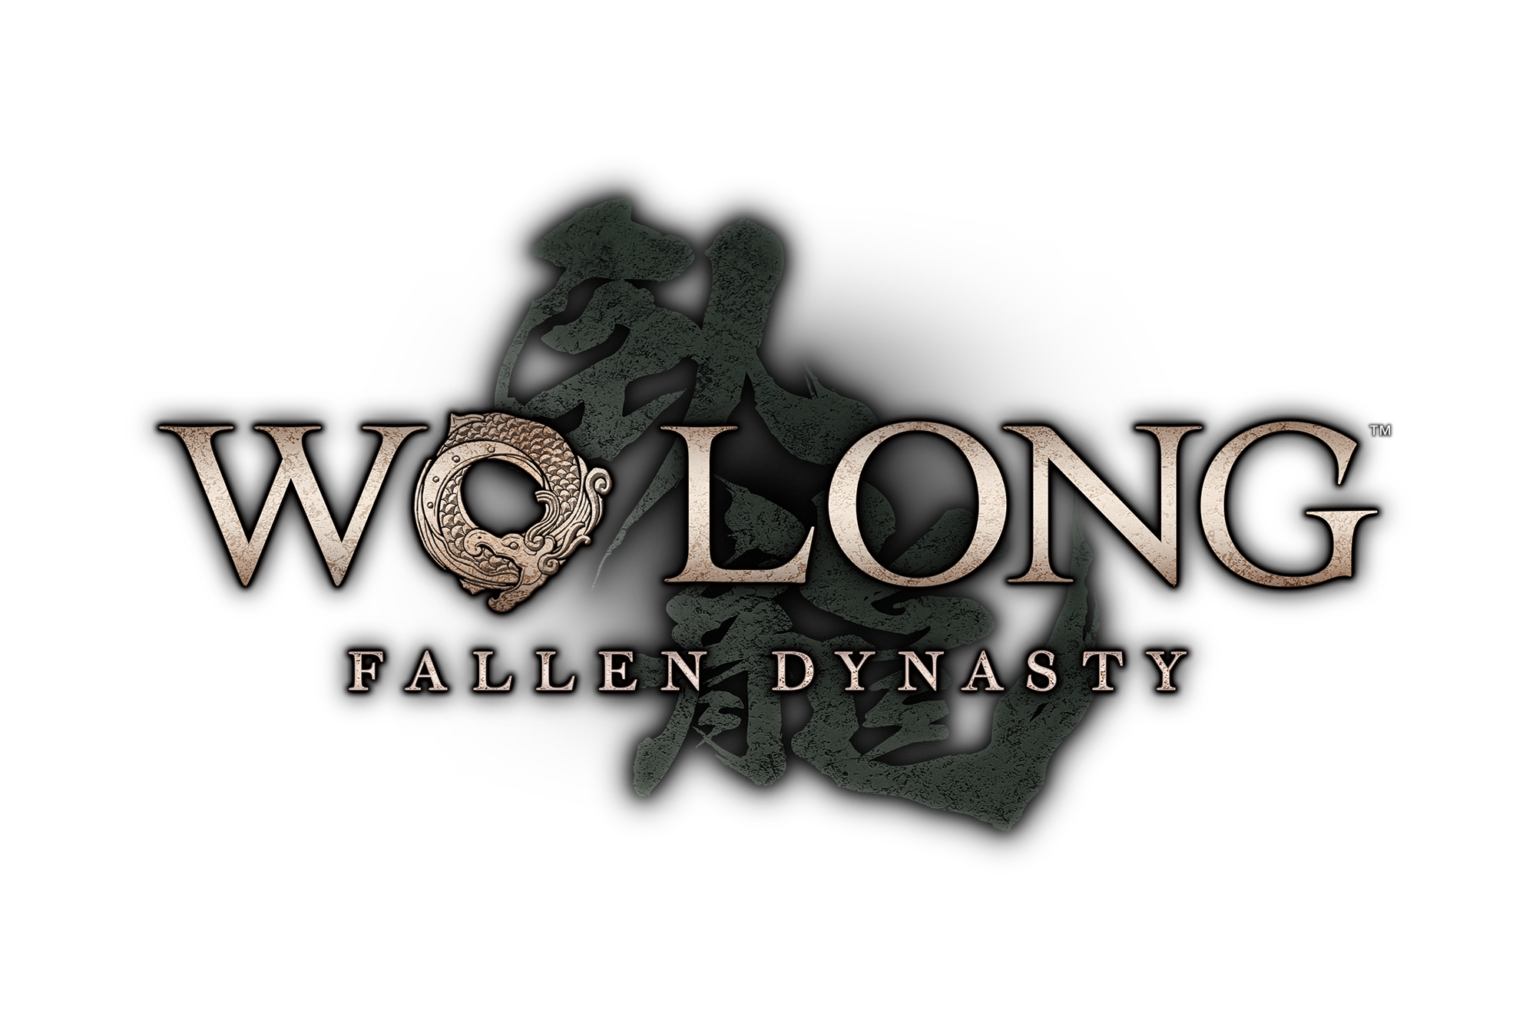 test wo long fallen dynasty